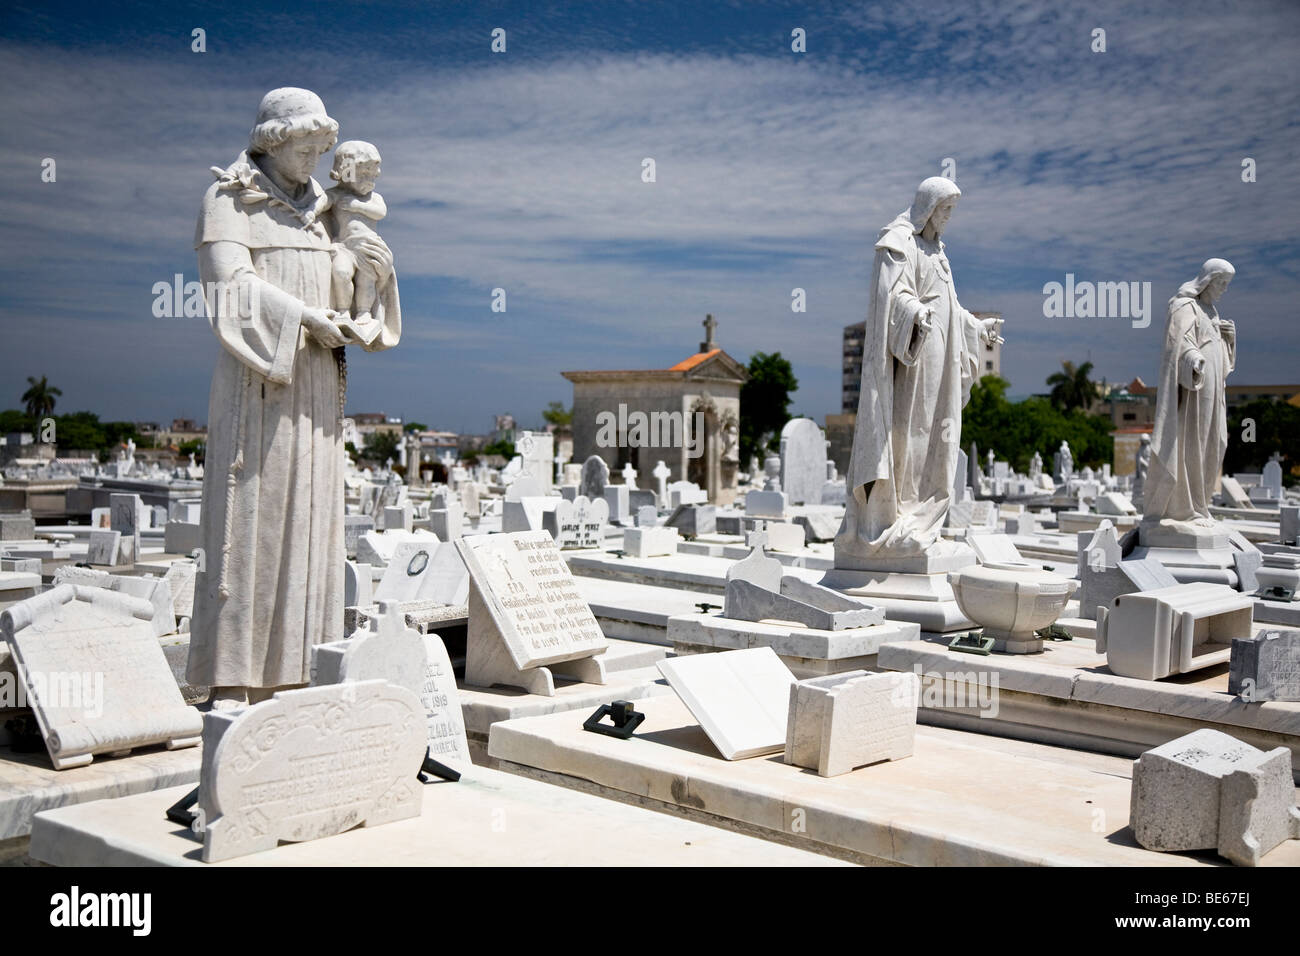 estatuas-y-tumbas-en-el-cementerio-de-colon-la-habana-cuba-be67ej.jpg